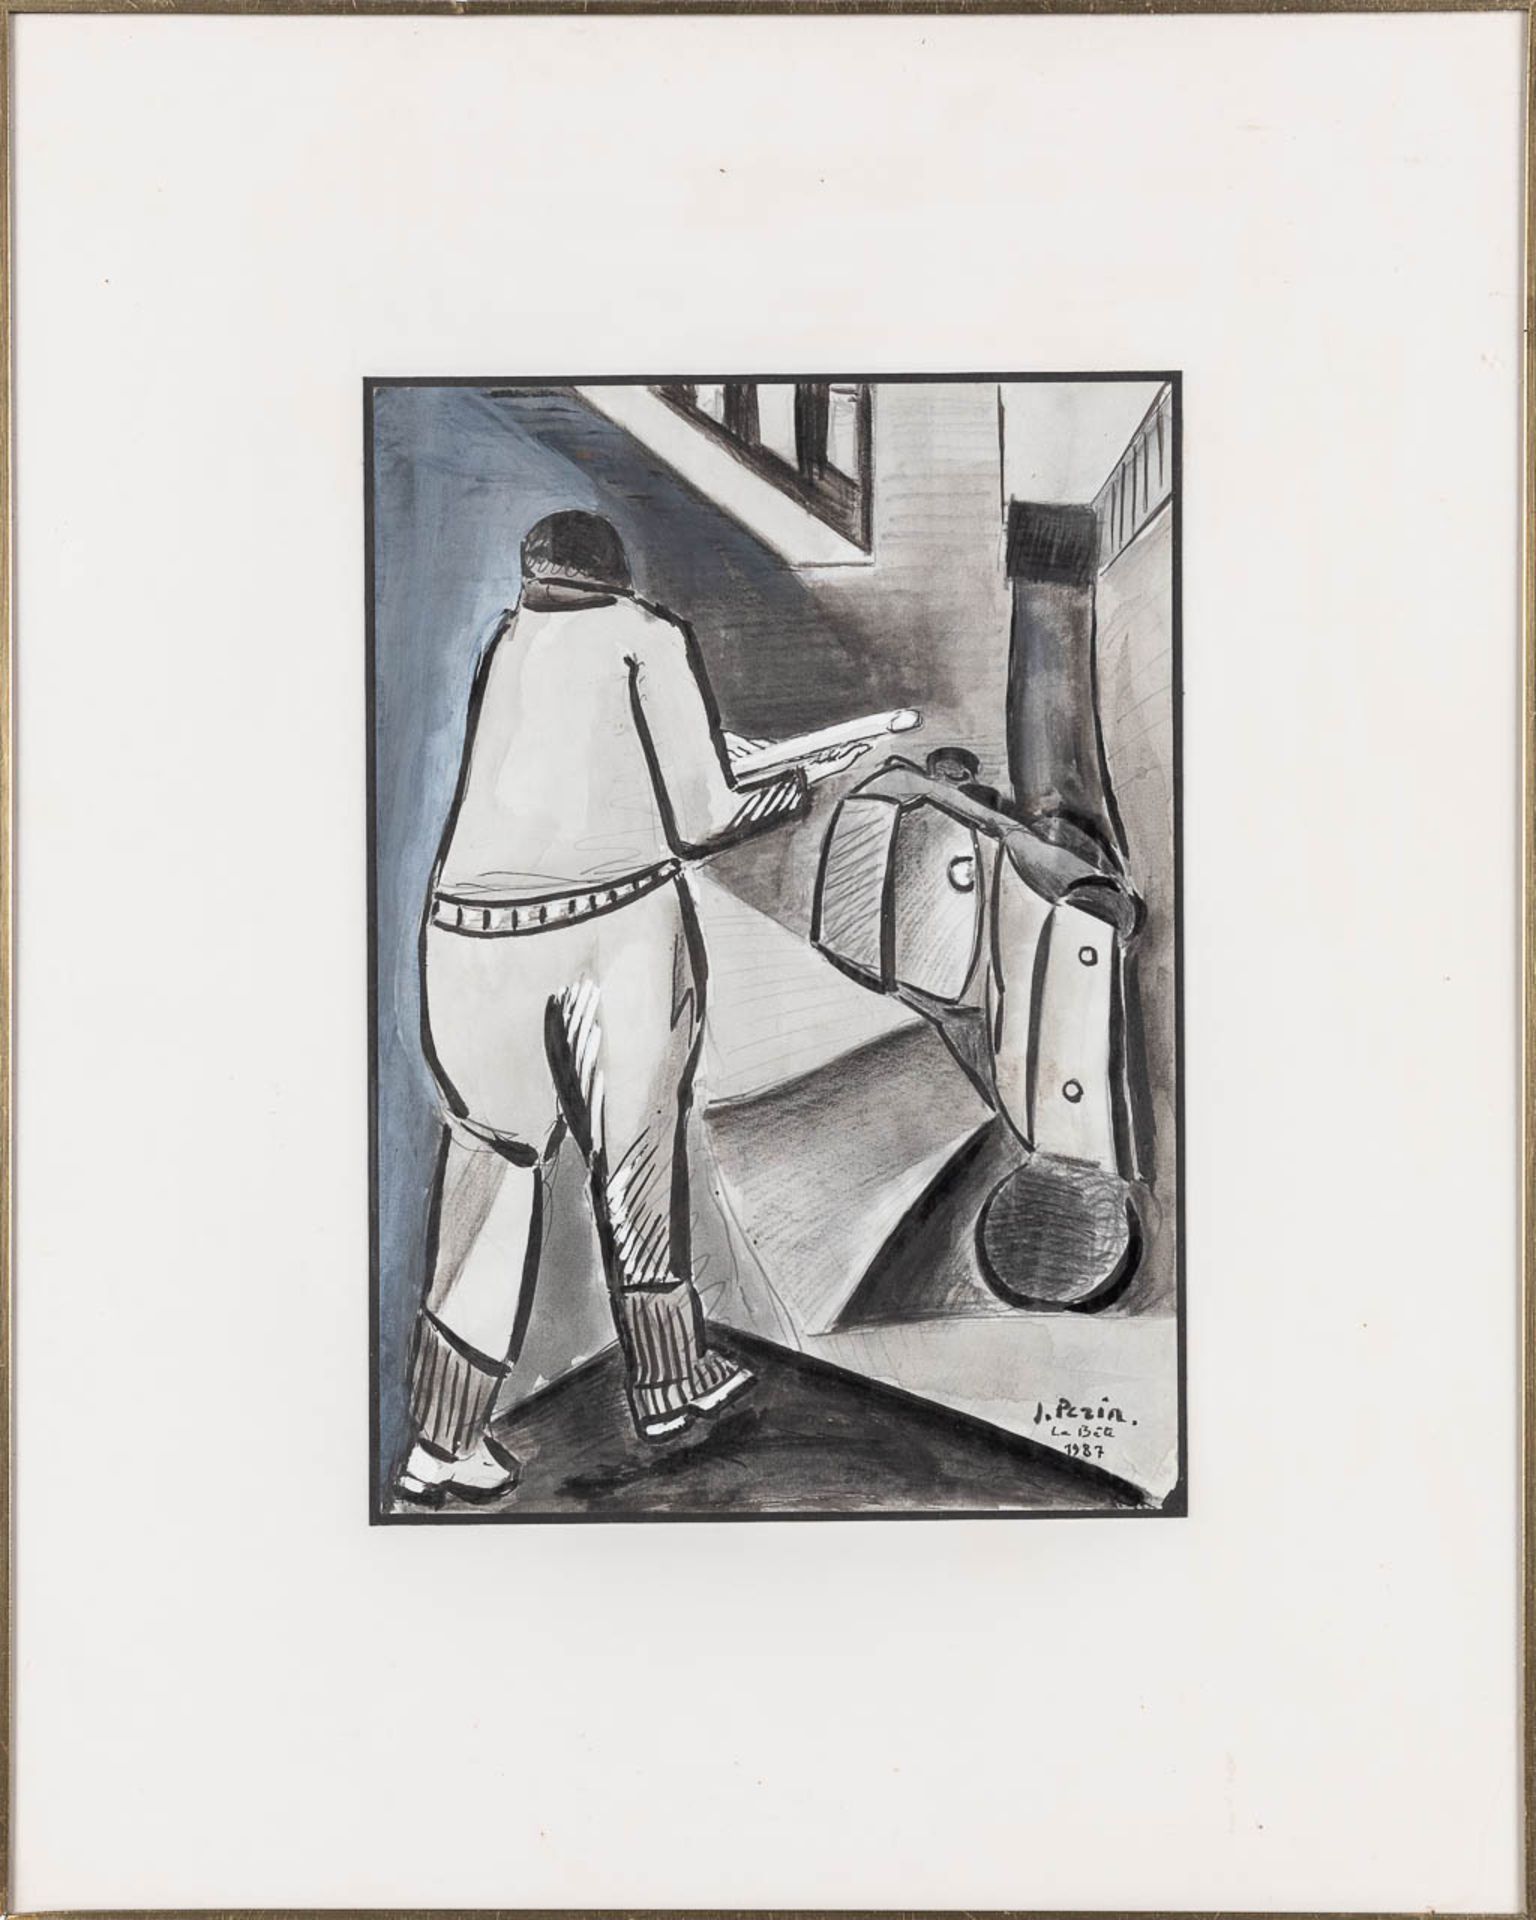 Jacques PERIN (1936) 'La Bte', watercolour on paper. 1987. (W: 21,5 x H: 30 cm) - Image 3 of 5